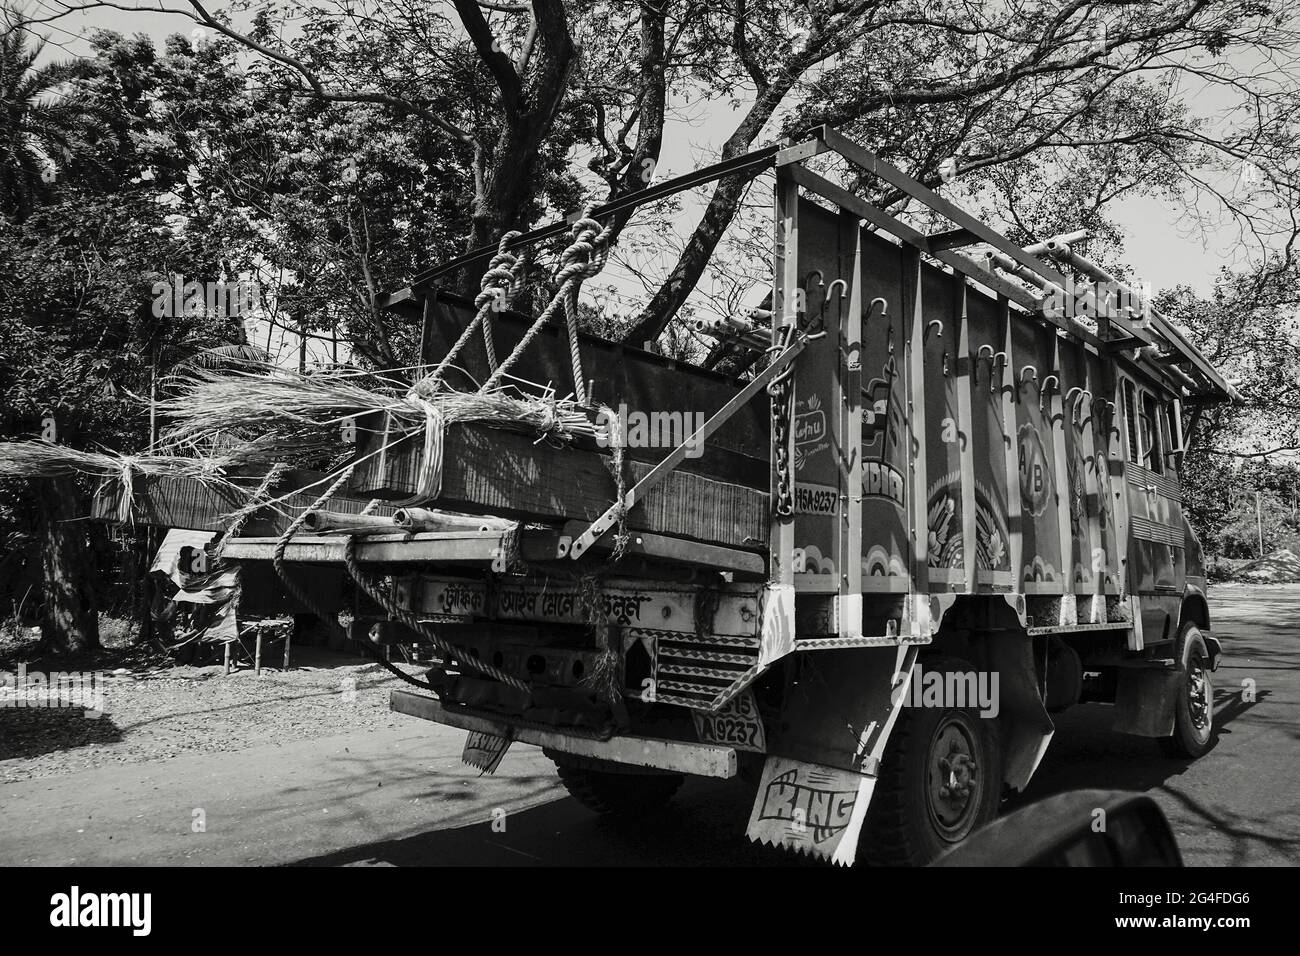 HOWRAH, BENGALA OCCIDENTALE, INDIA - 24 FEBBRAIO 2018 : UN camion di trasporto di merci sta trasportando le merci sull'autostrada durante il giorno. Immagine in bianco e nero. Foto Stock